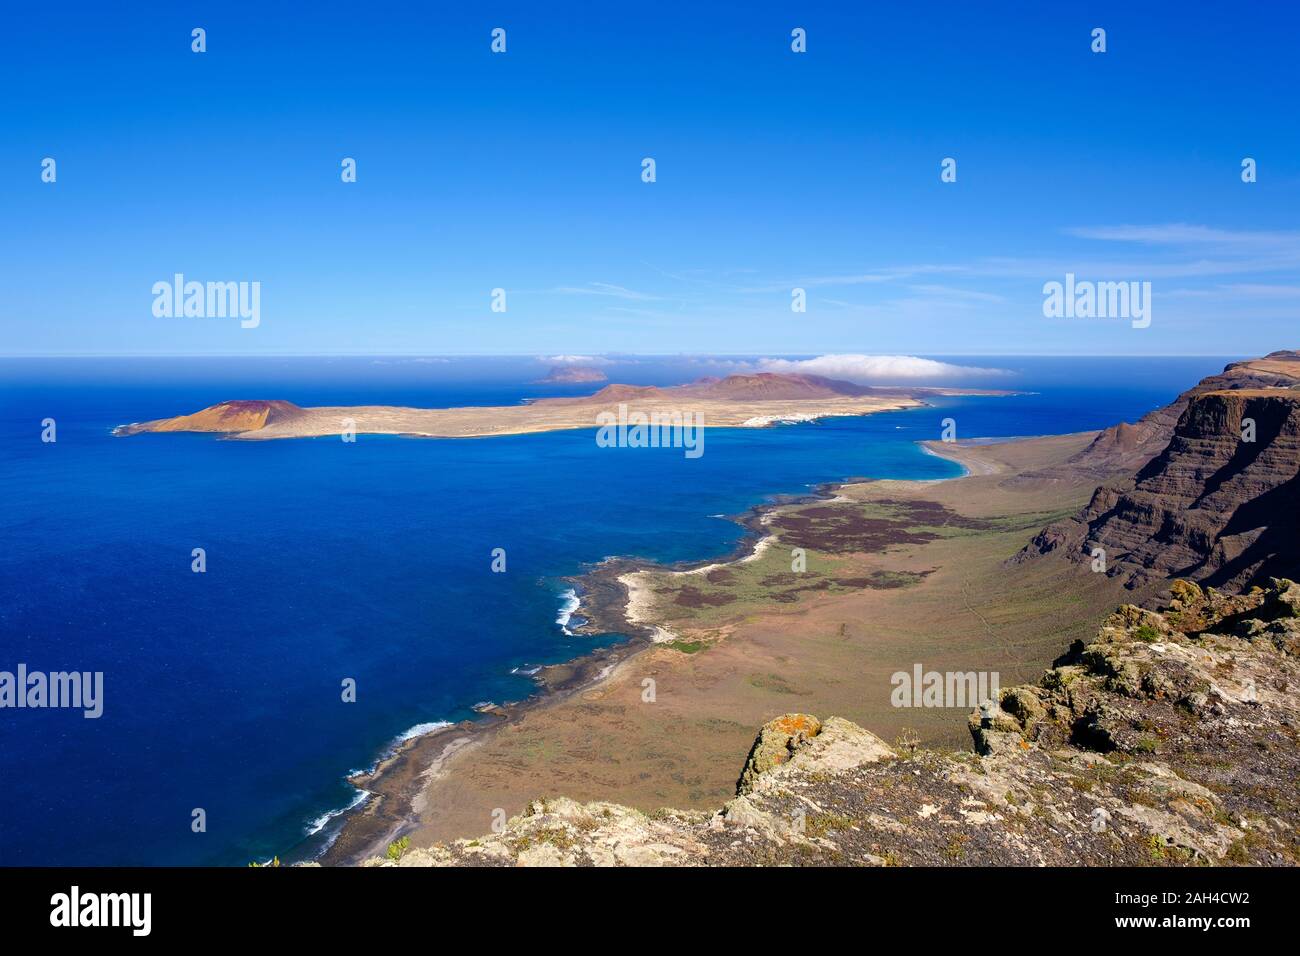 Spagna Isole Canarie, vista panoramica del Montana Clara isolotto visto dalla scogliera costiera di La Graciosa Foto Stock